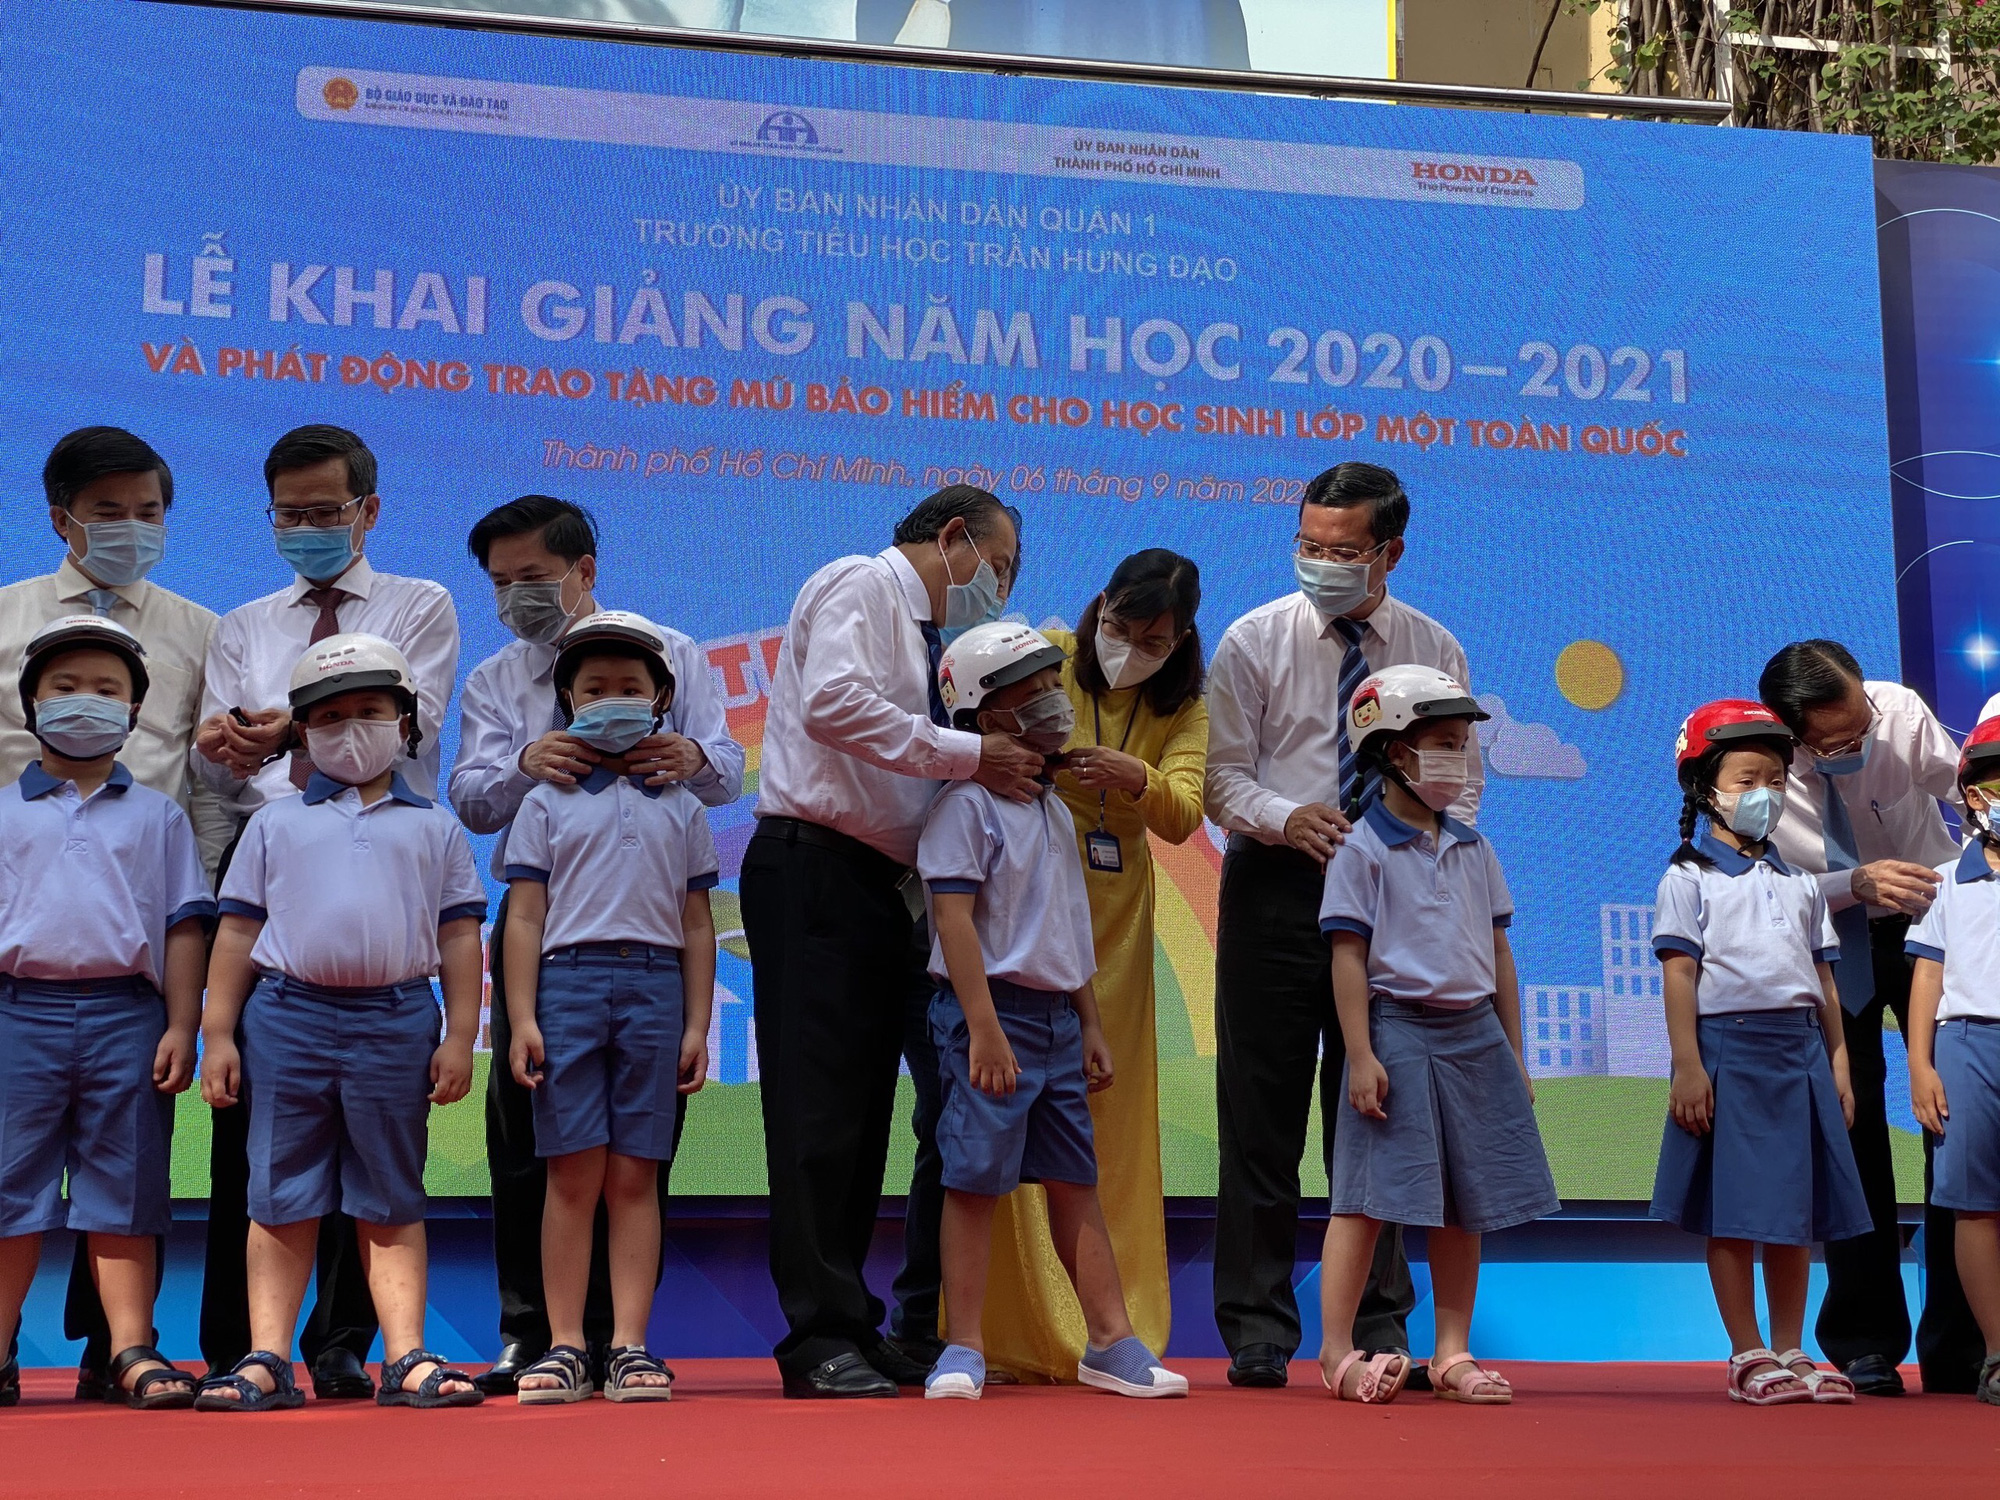 Một hành động nhỏ, nhưng ý nghĩa lớn. Hãy xem hình ảnh Phó Thủ tướng Trương Hòa Bình đội mũ bảo hiểm cho học sinh trong bức ảnh này. Đây là một thông điệp về sự quan tâm và bảo vệ cho những thế hệ trẻ của chúng ta.